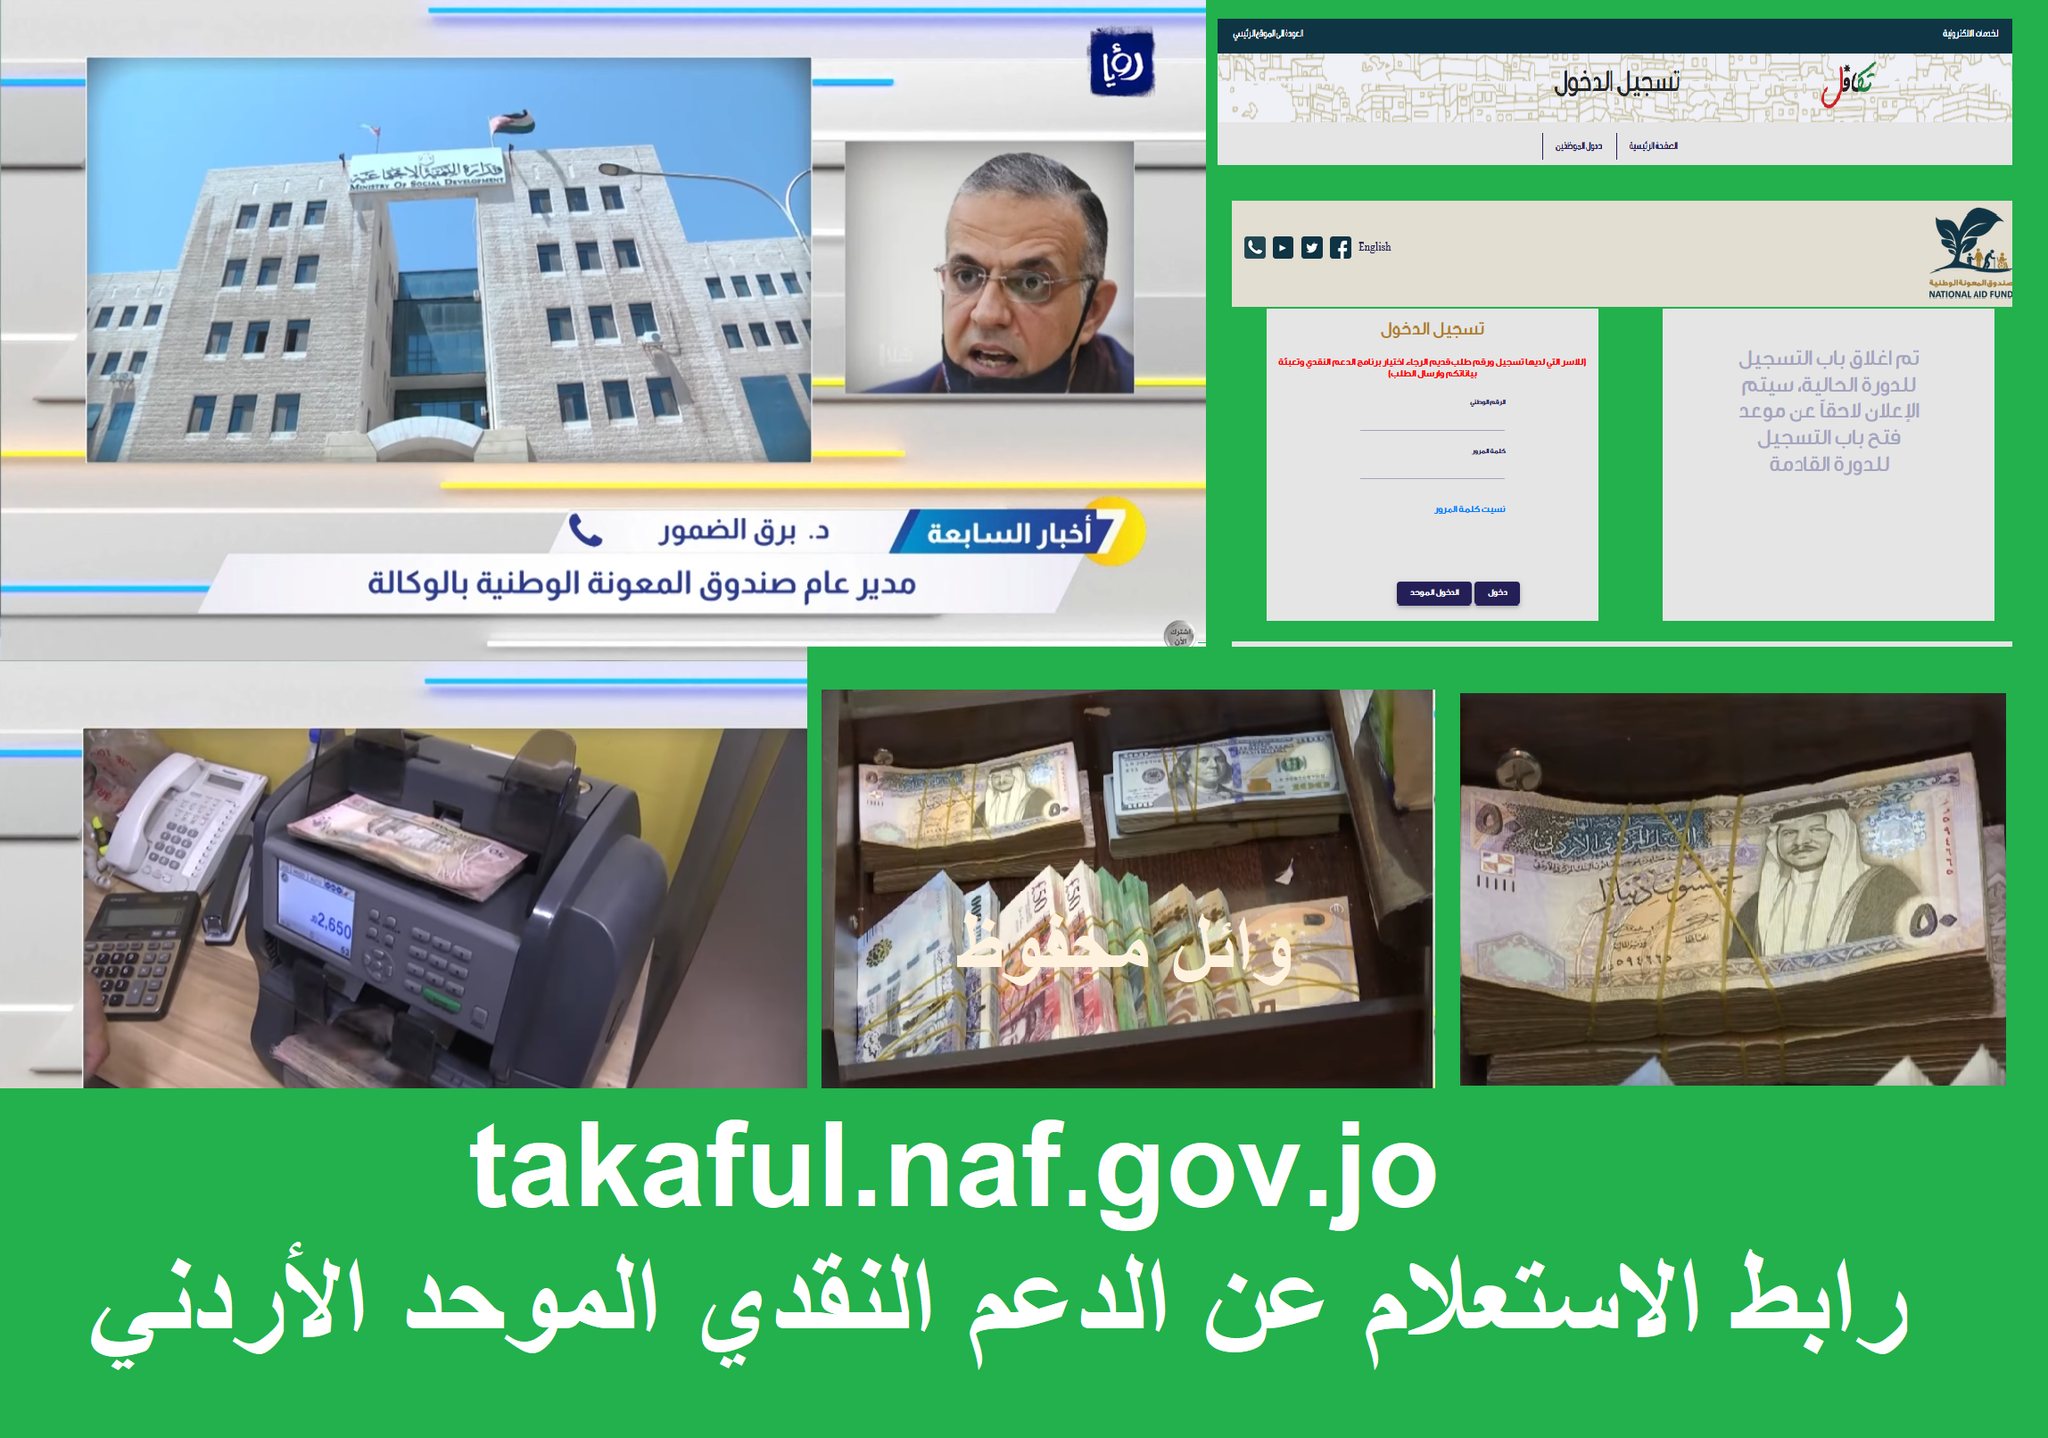 رابط الاستعلام والتسجيل في الدعم النقدي الموحد "التكميلي الأردني" takaful.naf.gov.jo حالة الطلب